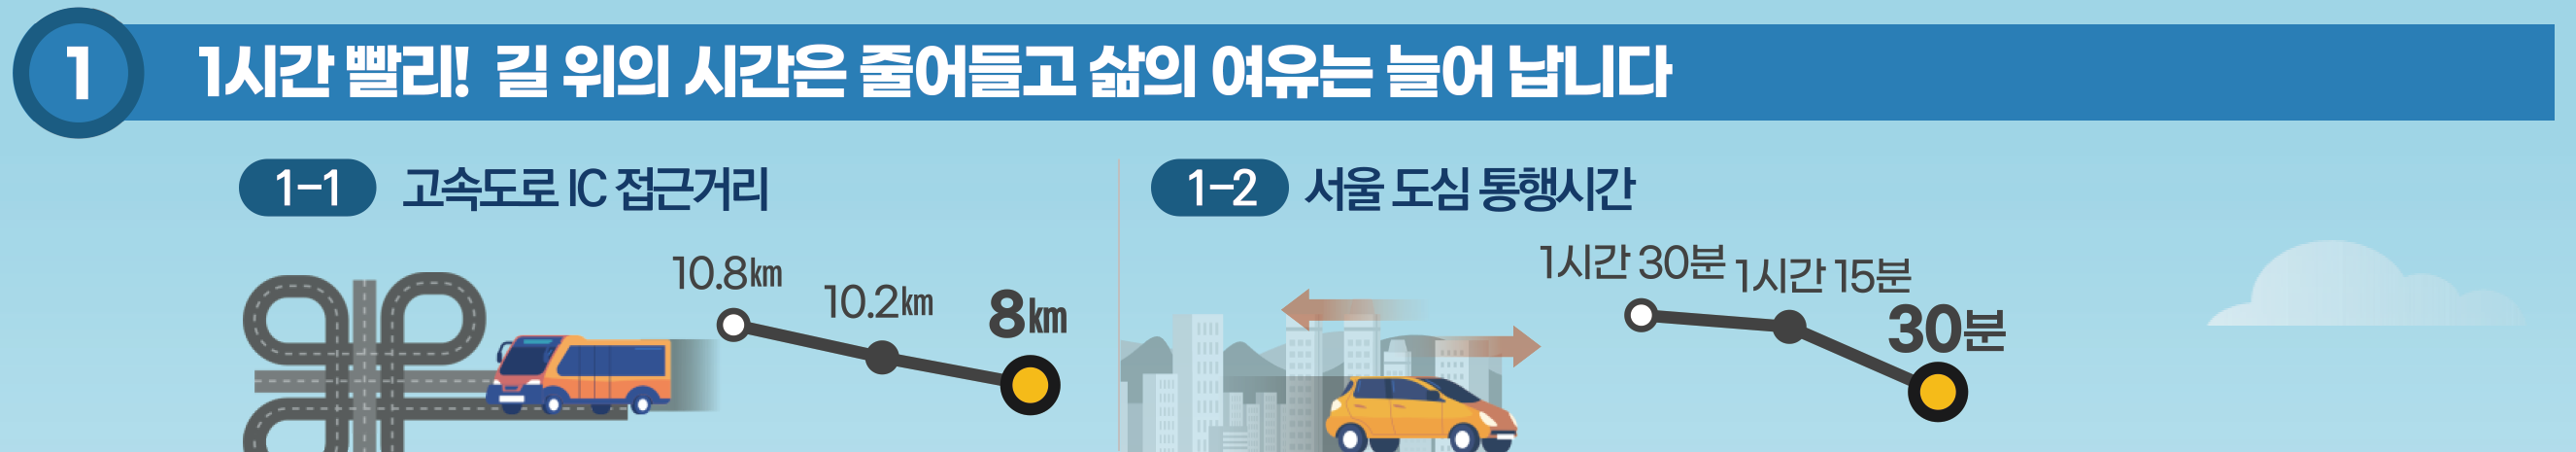 첫째, 1시간 빨리! 길 위의 시간은 줄이고 삶의 여유를 드리겠습니다.
2040년까지 고속도로 IC 접근 거리를 10.8㎞에서 8㎞로, 
서울 도심 통행시간을 1시간 30분에서 30분으로 단축하겠습니다.